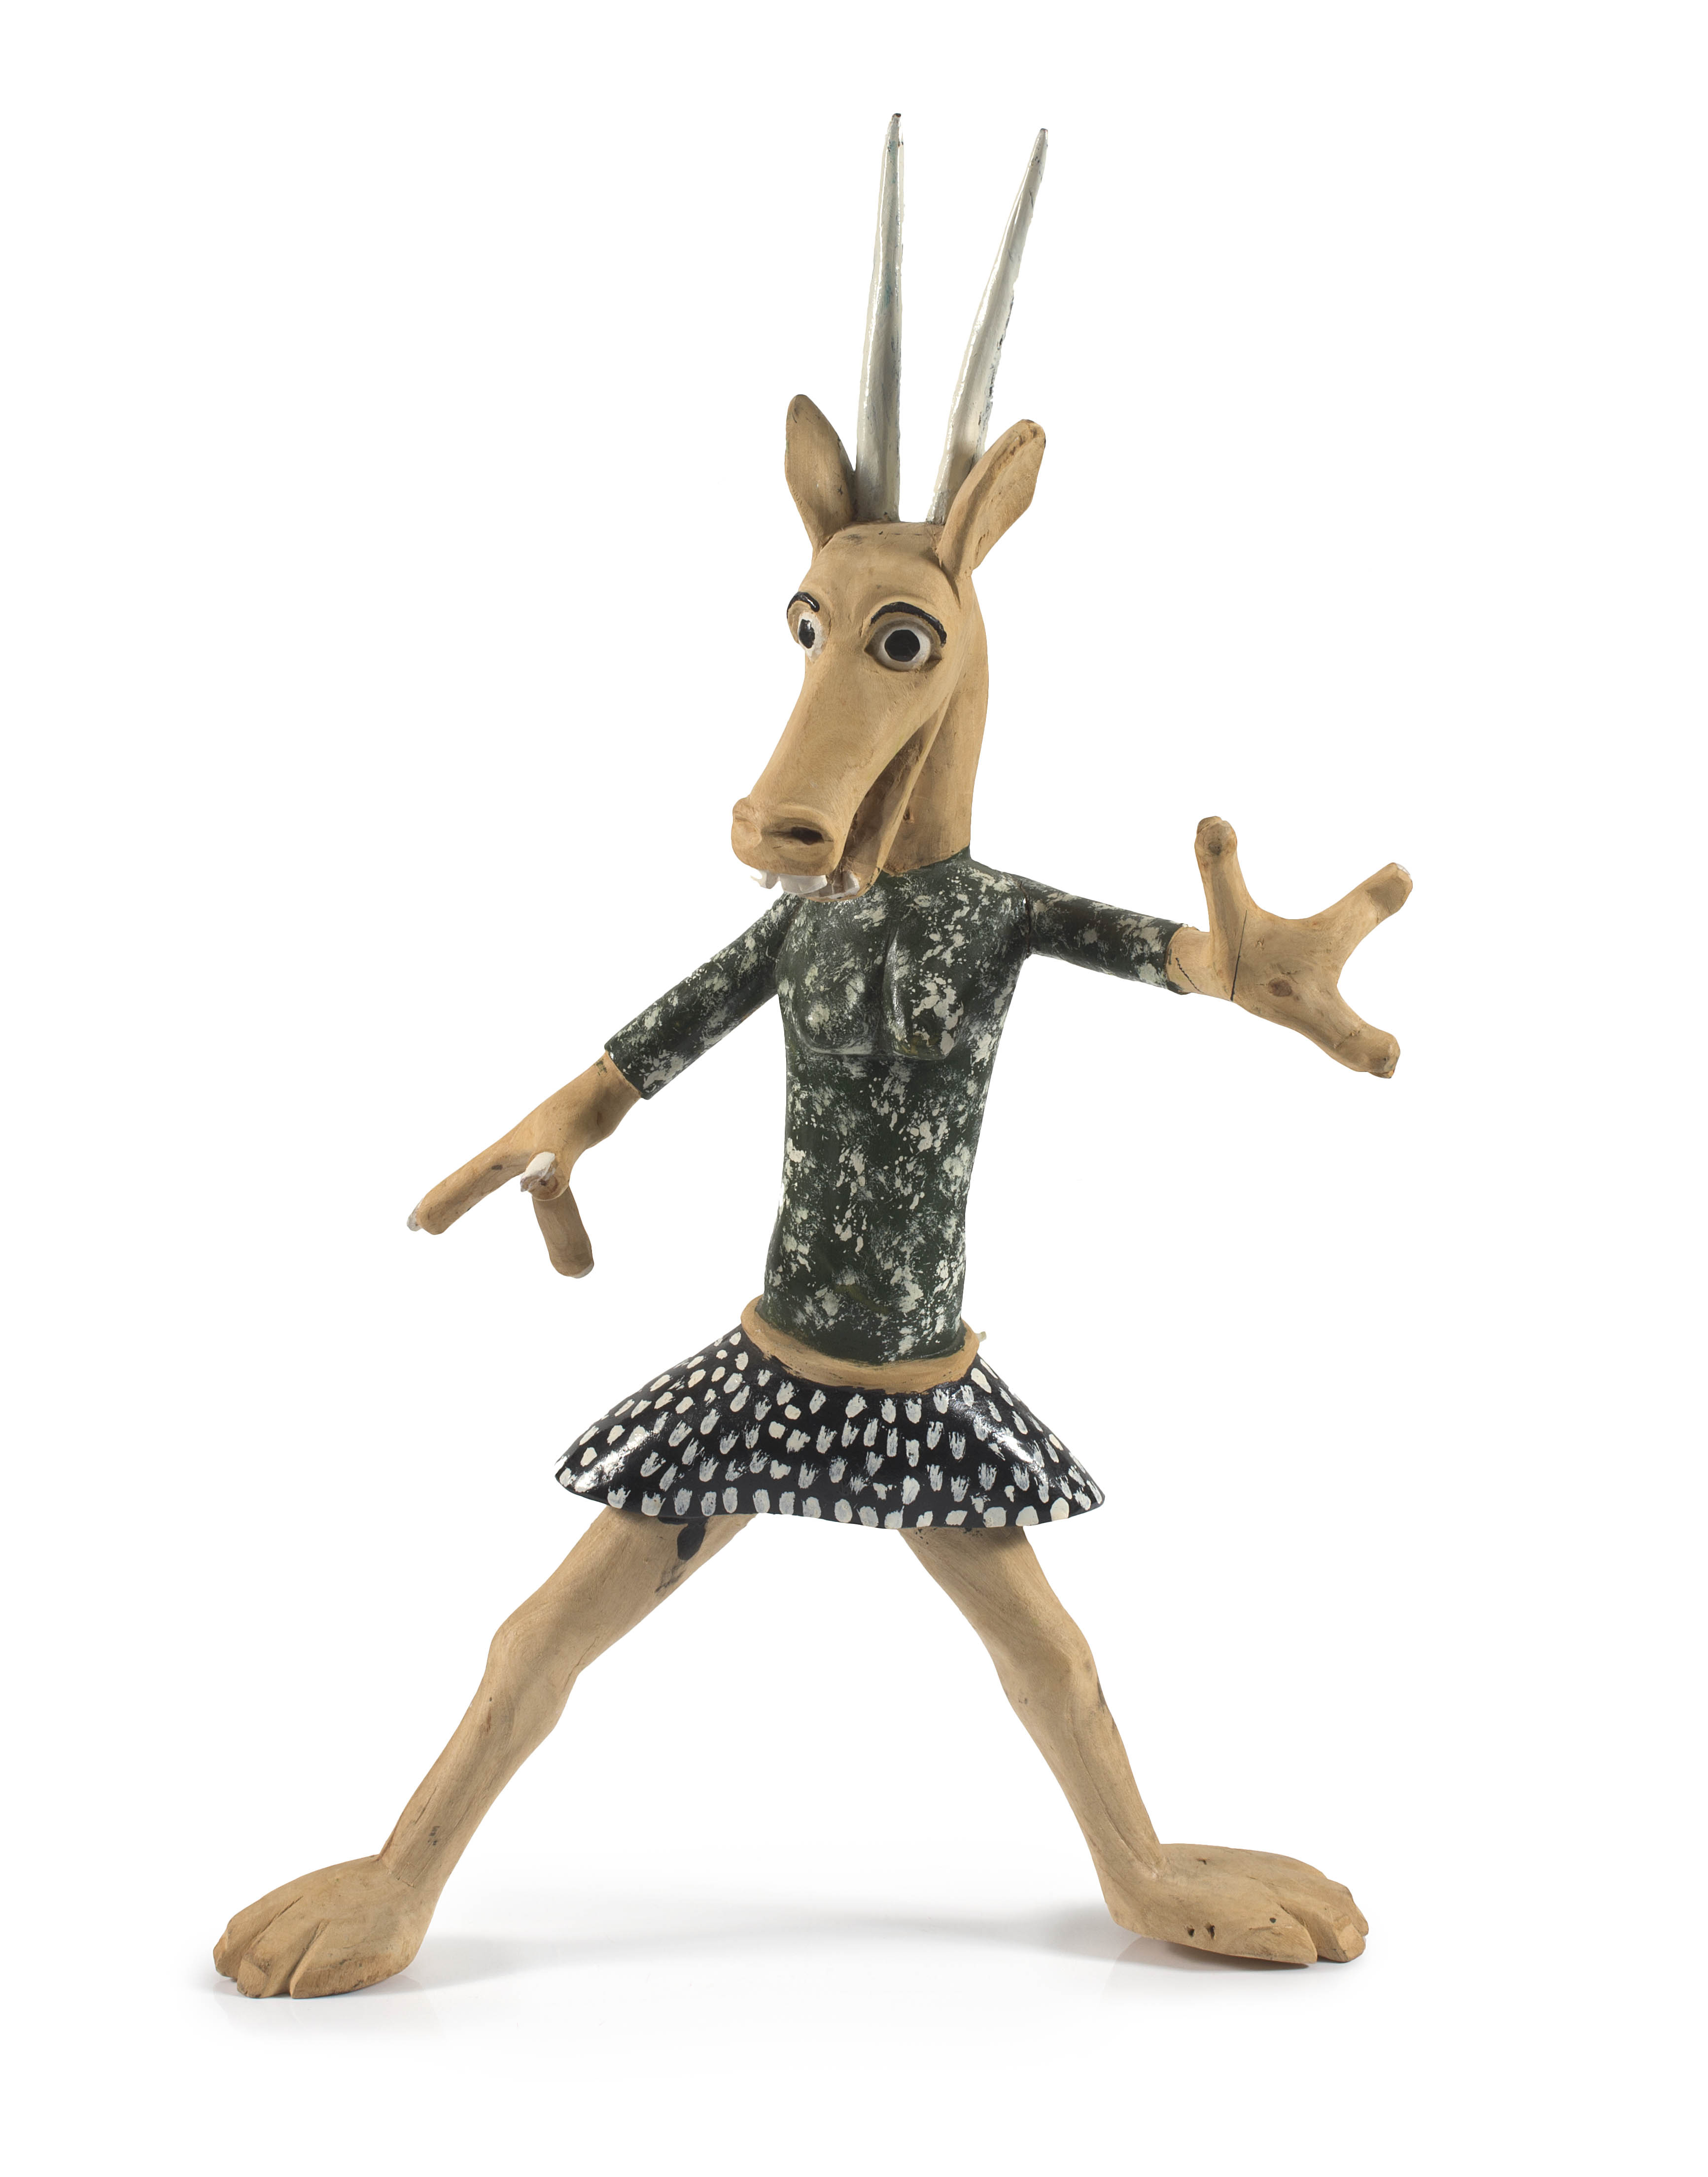 Phillip Rikhotso; Antelope in a Skirt